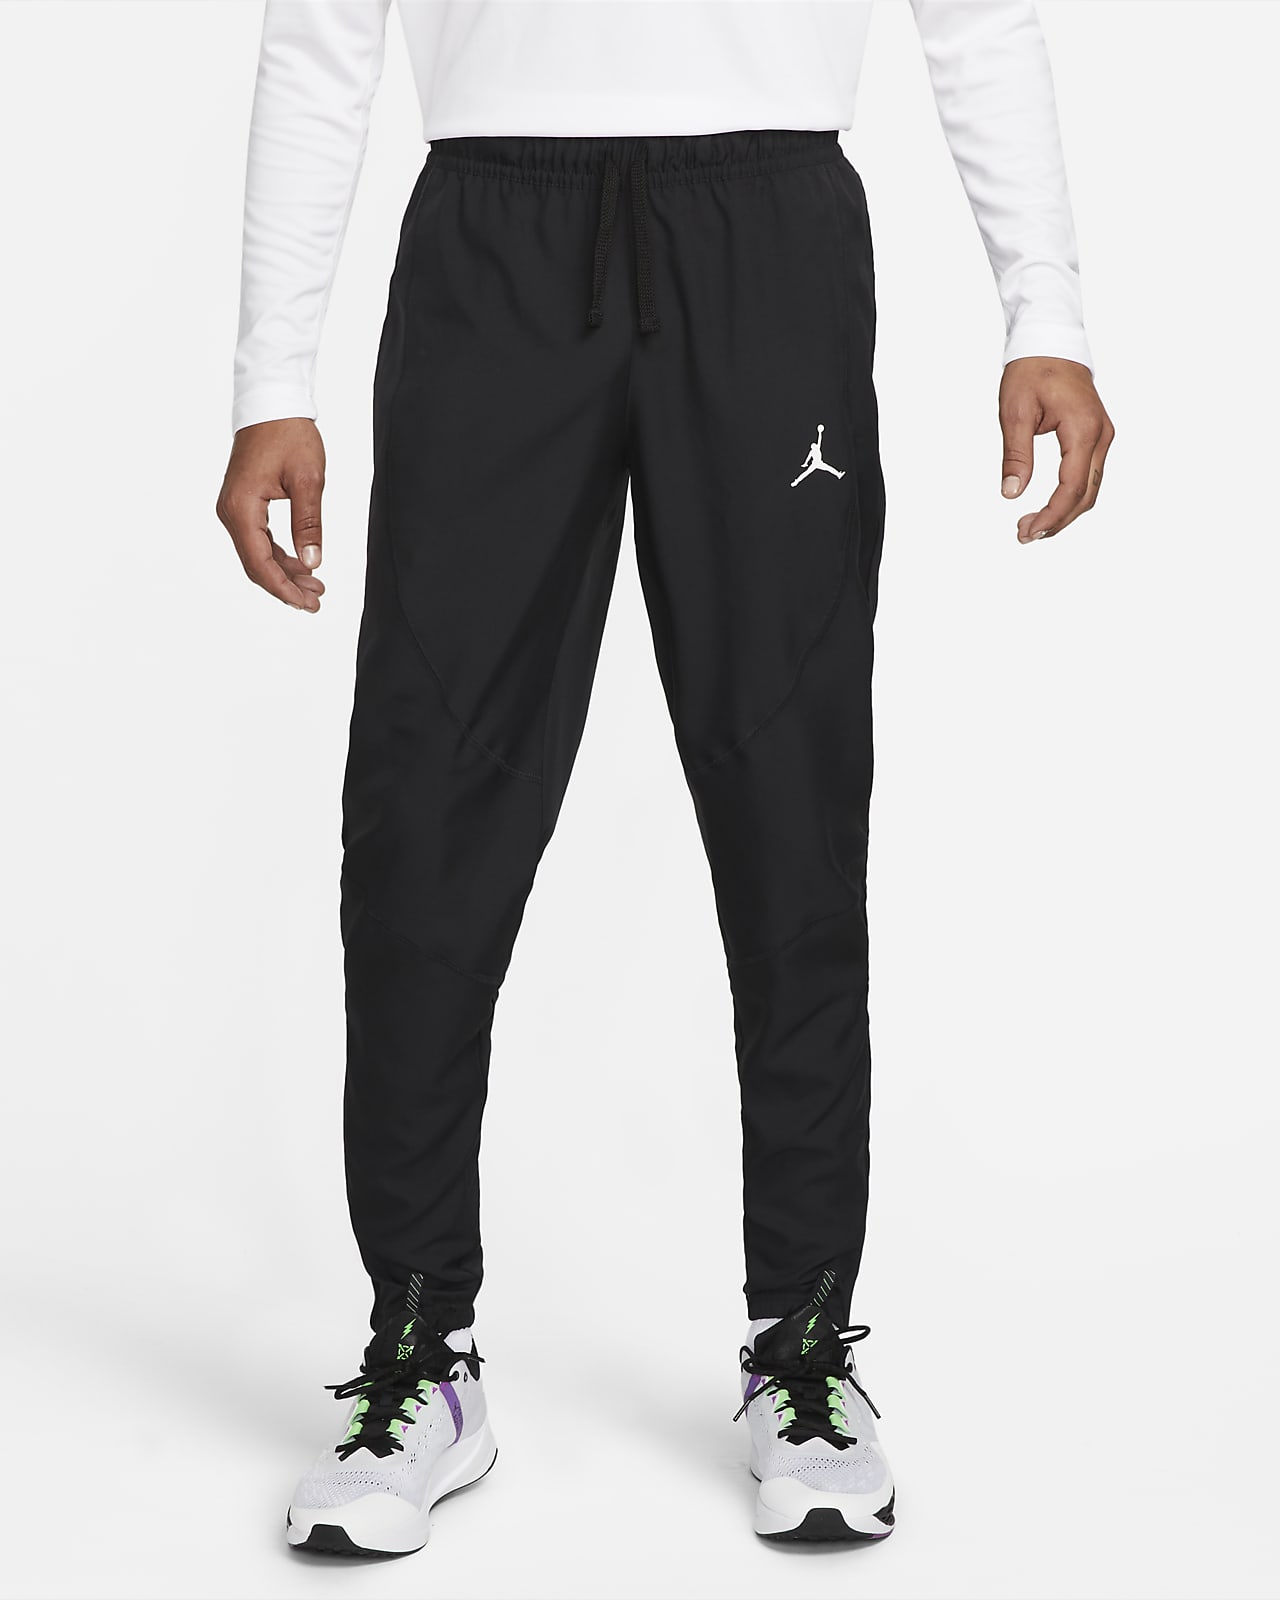 Jordan Pants Essentials Fleece  Grey  wwwunisportstorecom